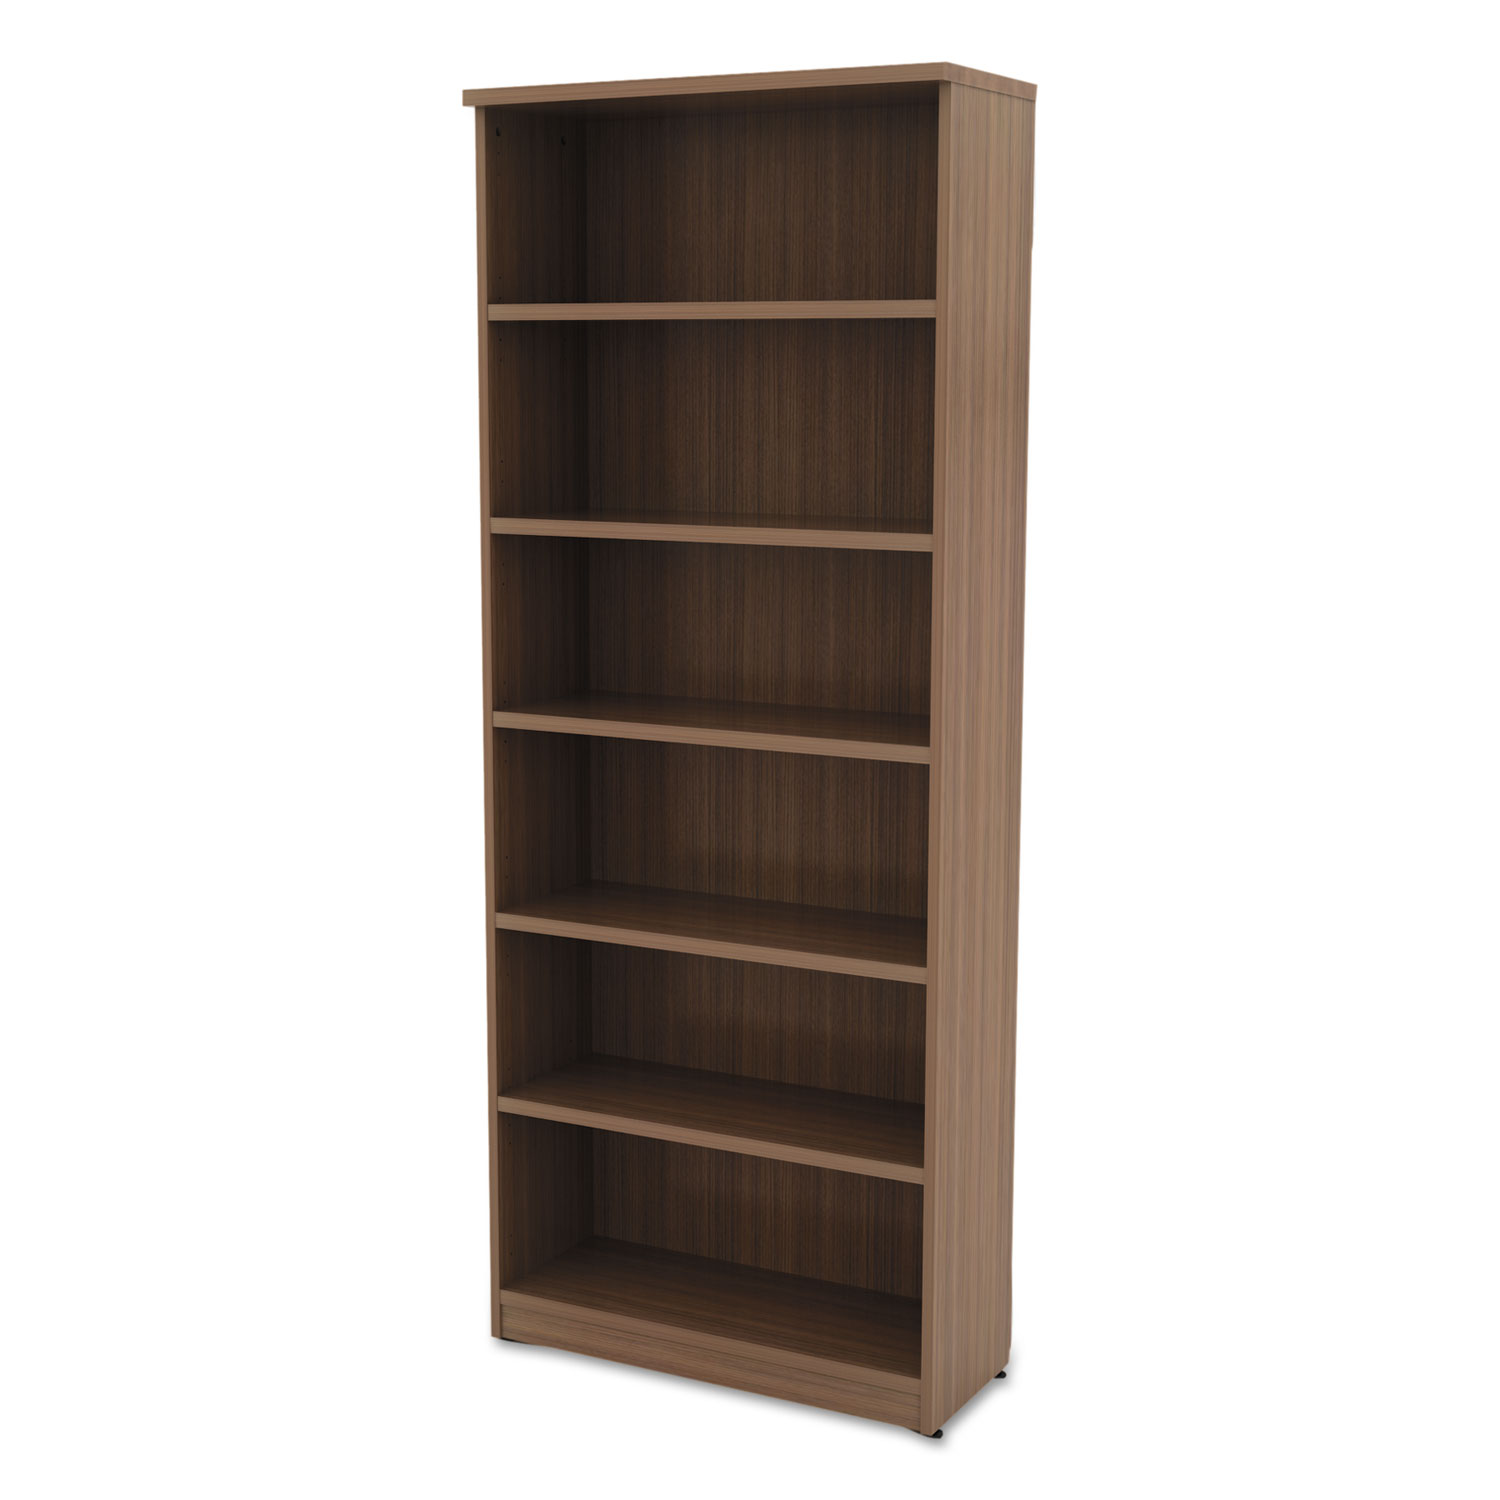 Alera Valencia Series Bookcase, Six-Shelf, 31 3/4w x 14d x 80 3/8h, Mod Walnut